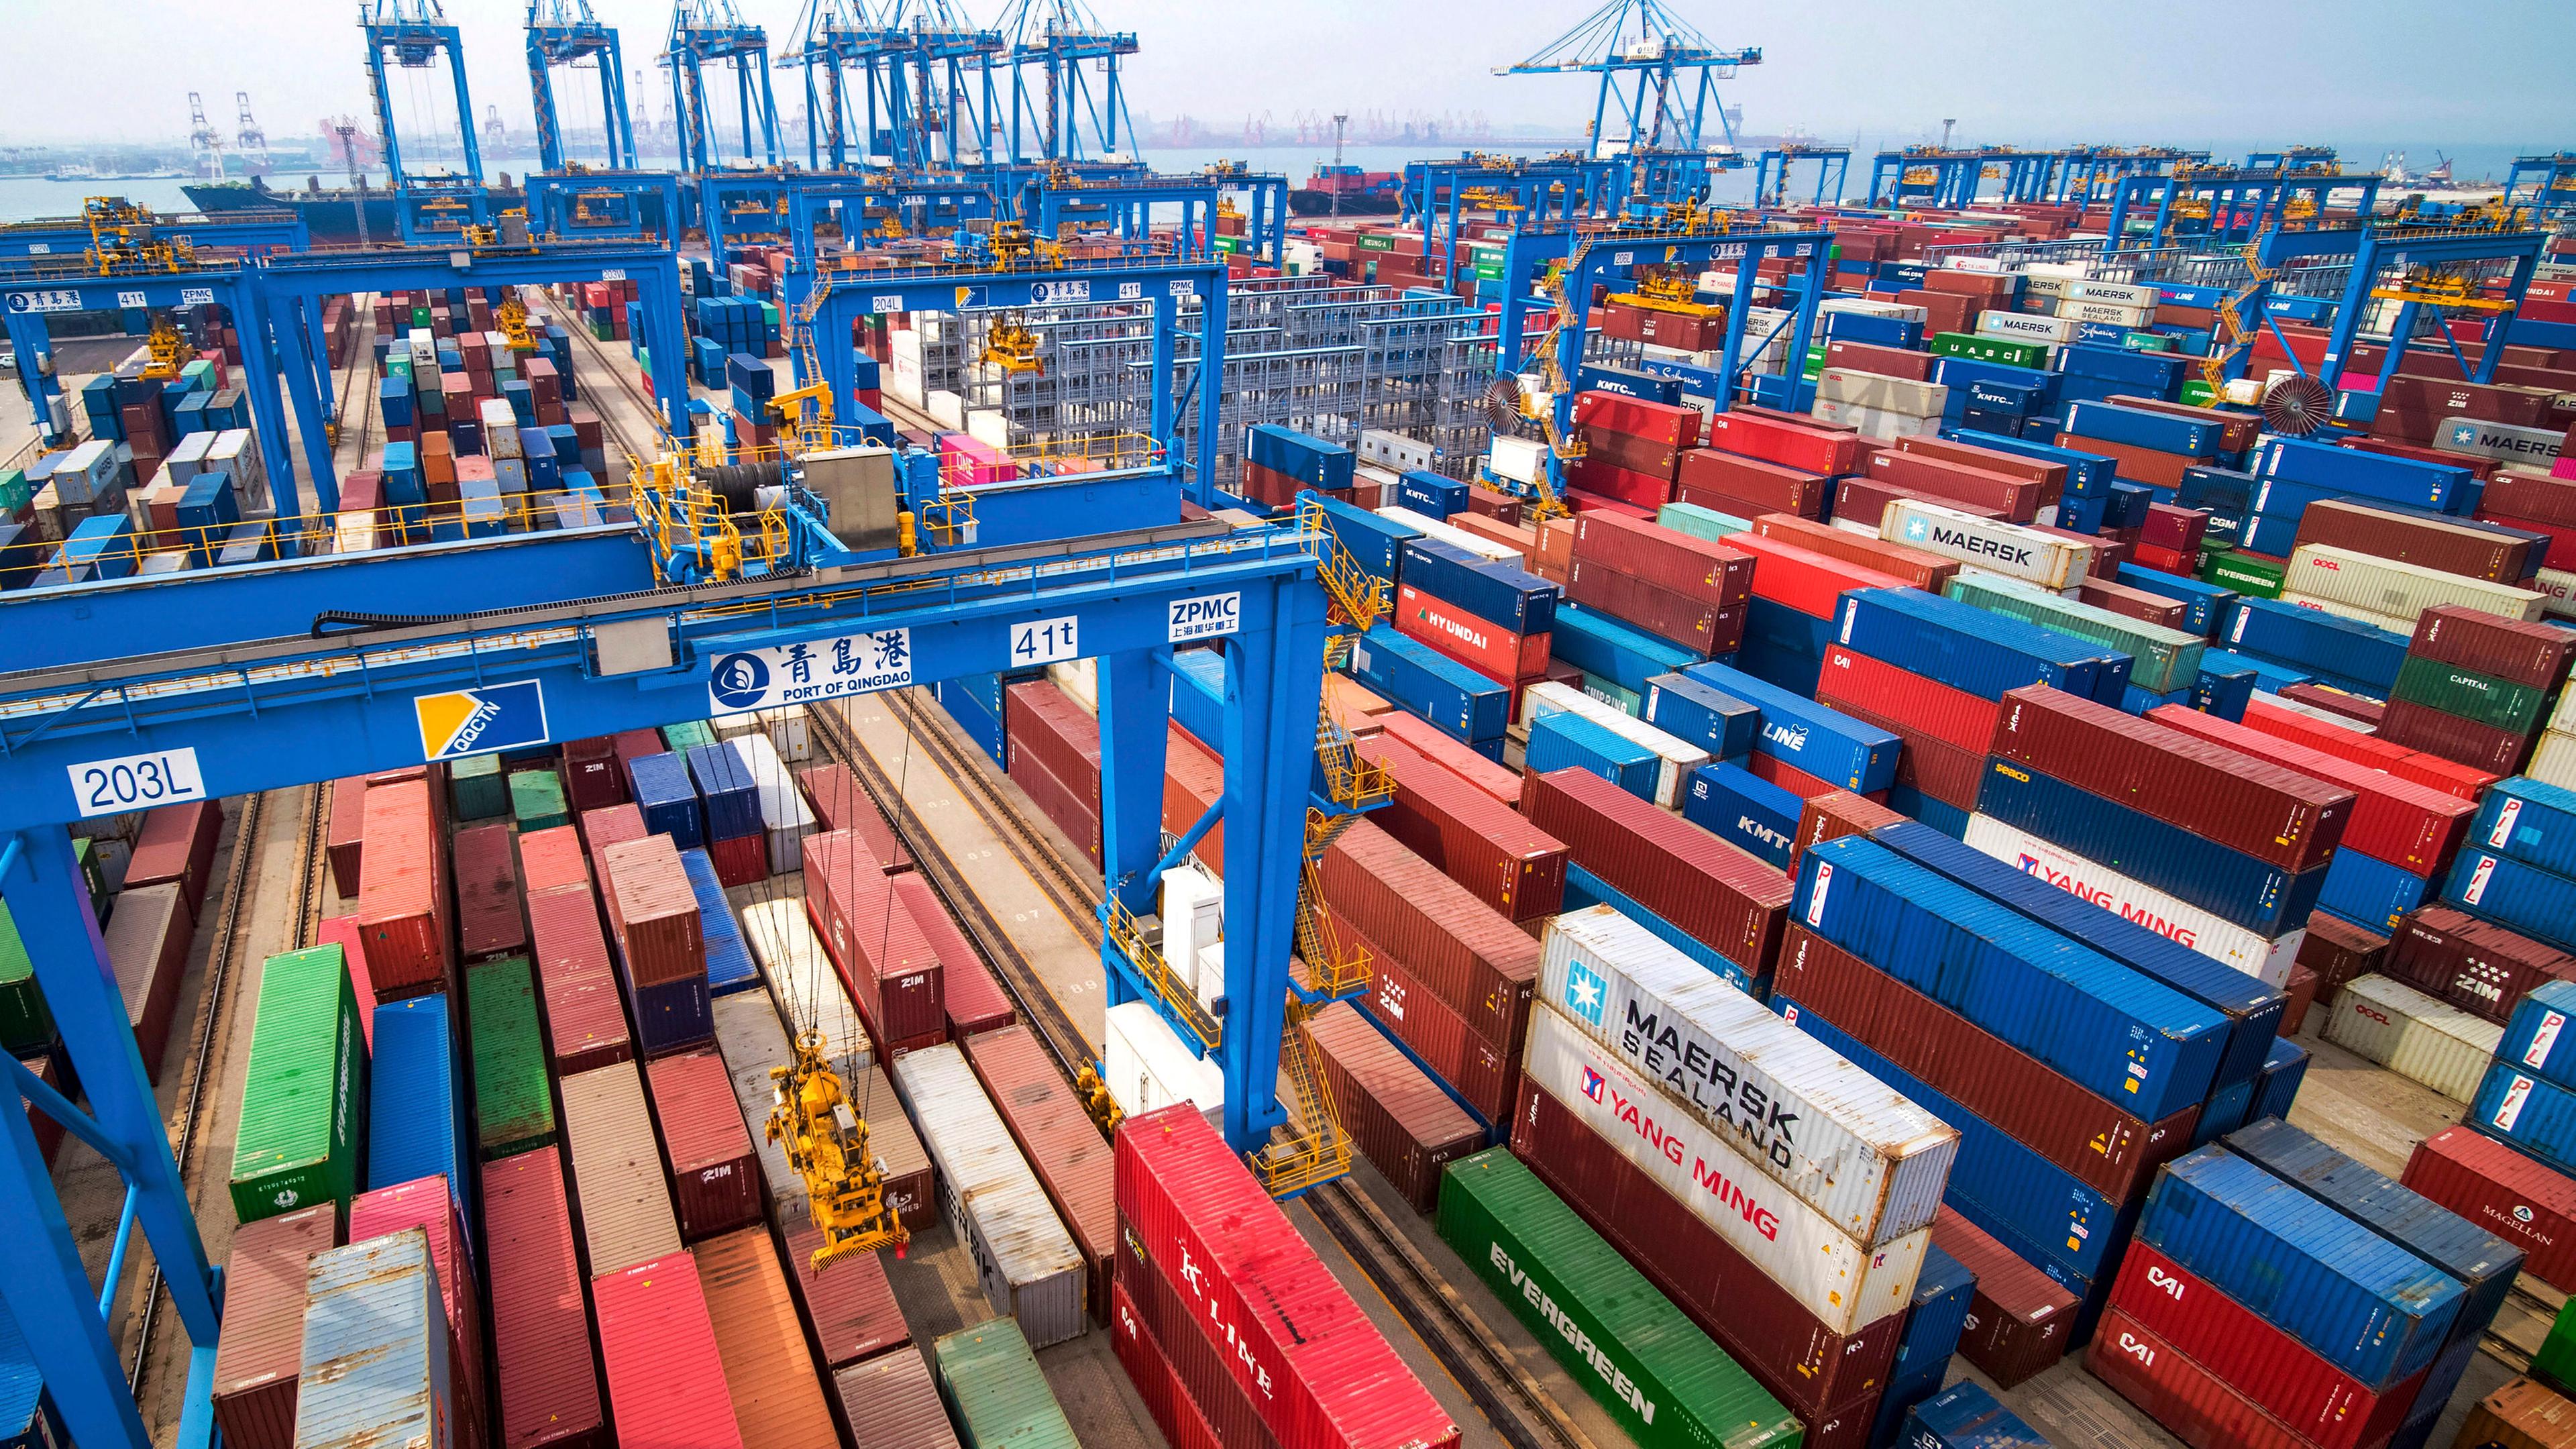 hina, Qingdao: Zahlreiche Container stehen im Hafen, dessen Containerterminal teilweise vollautomatisch funktioniert. Archivbild